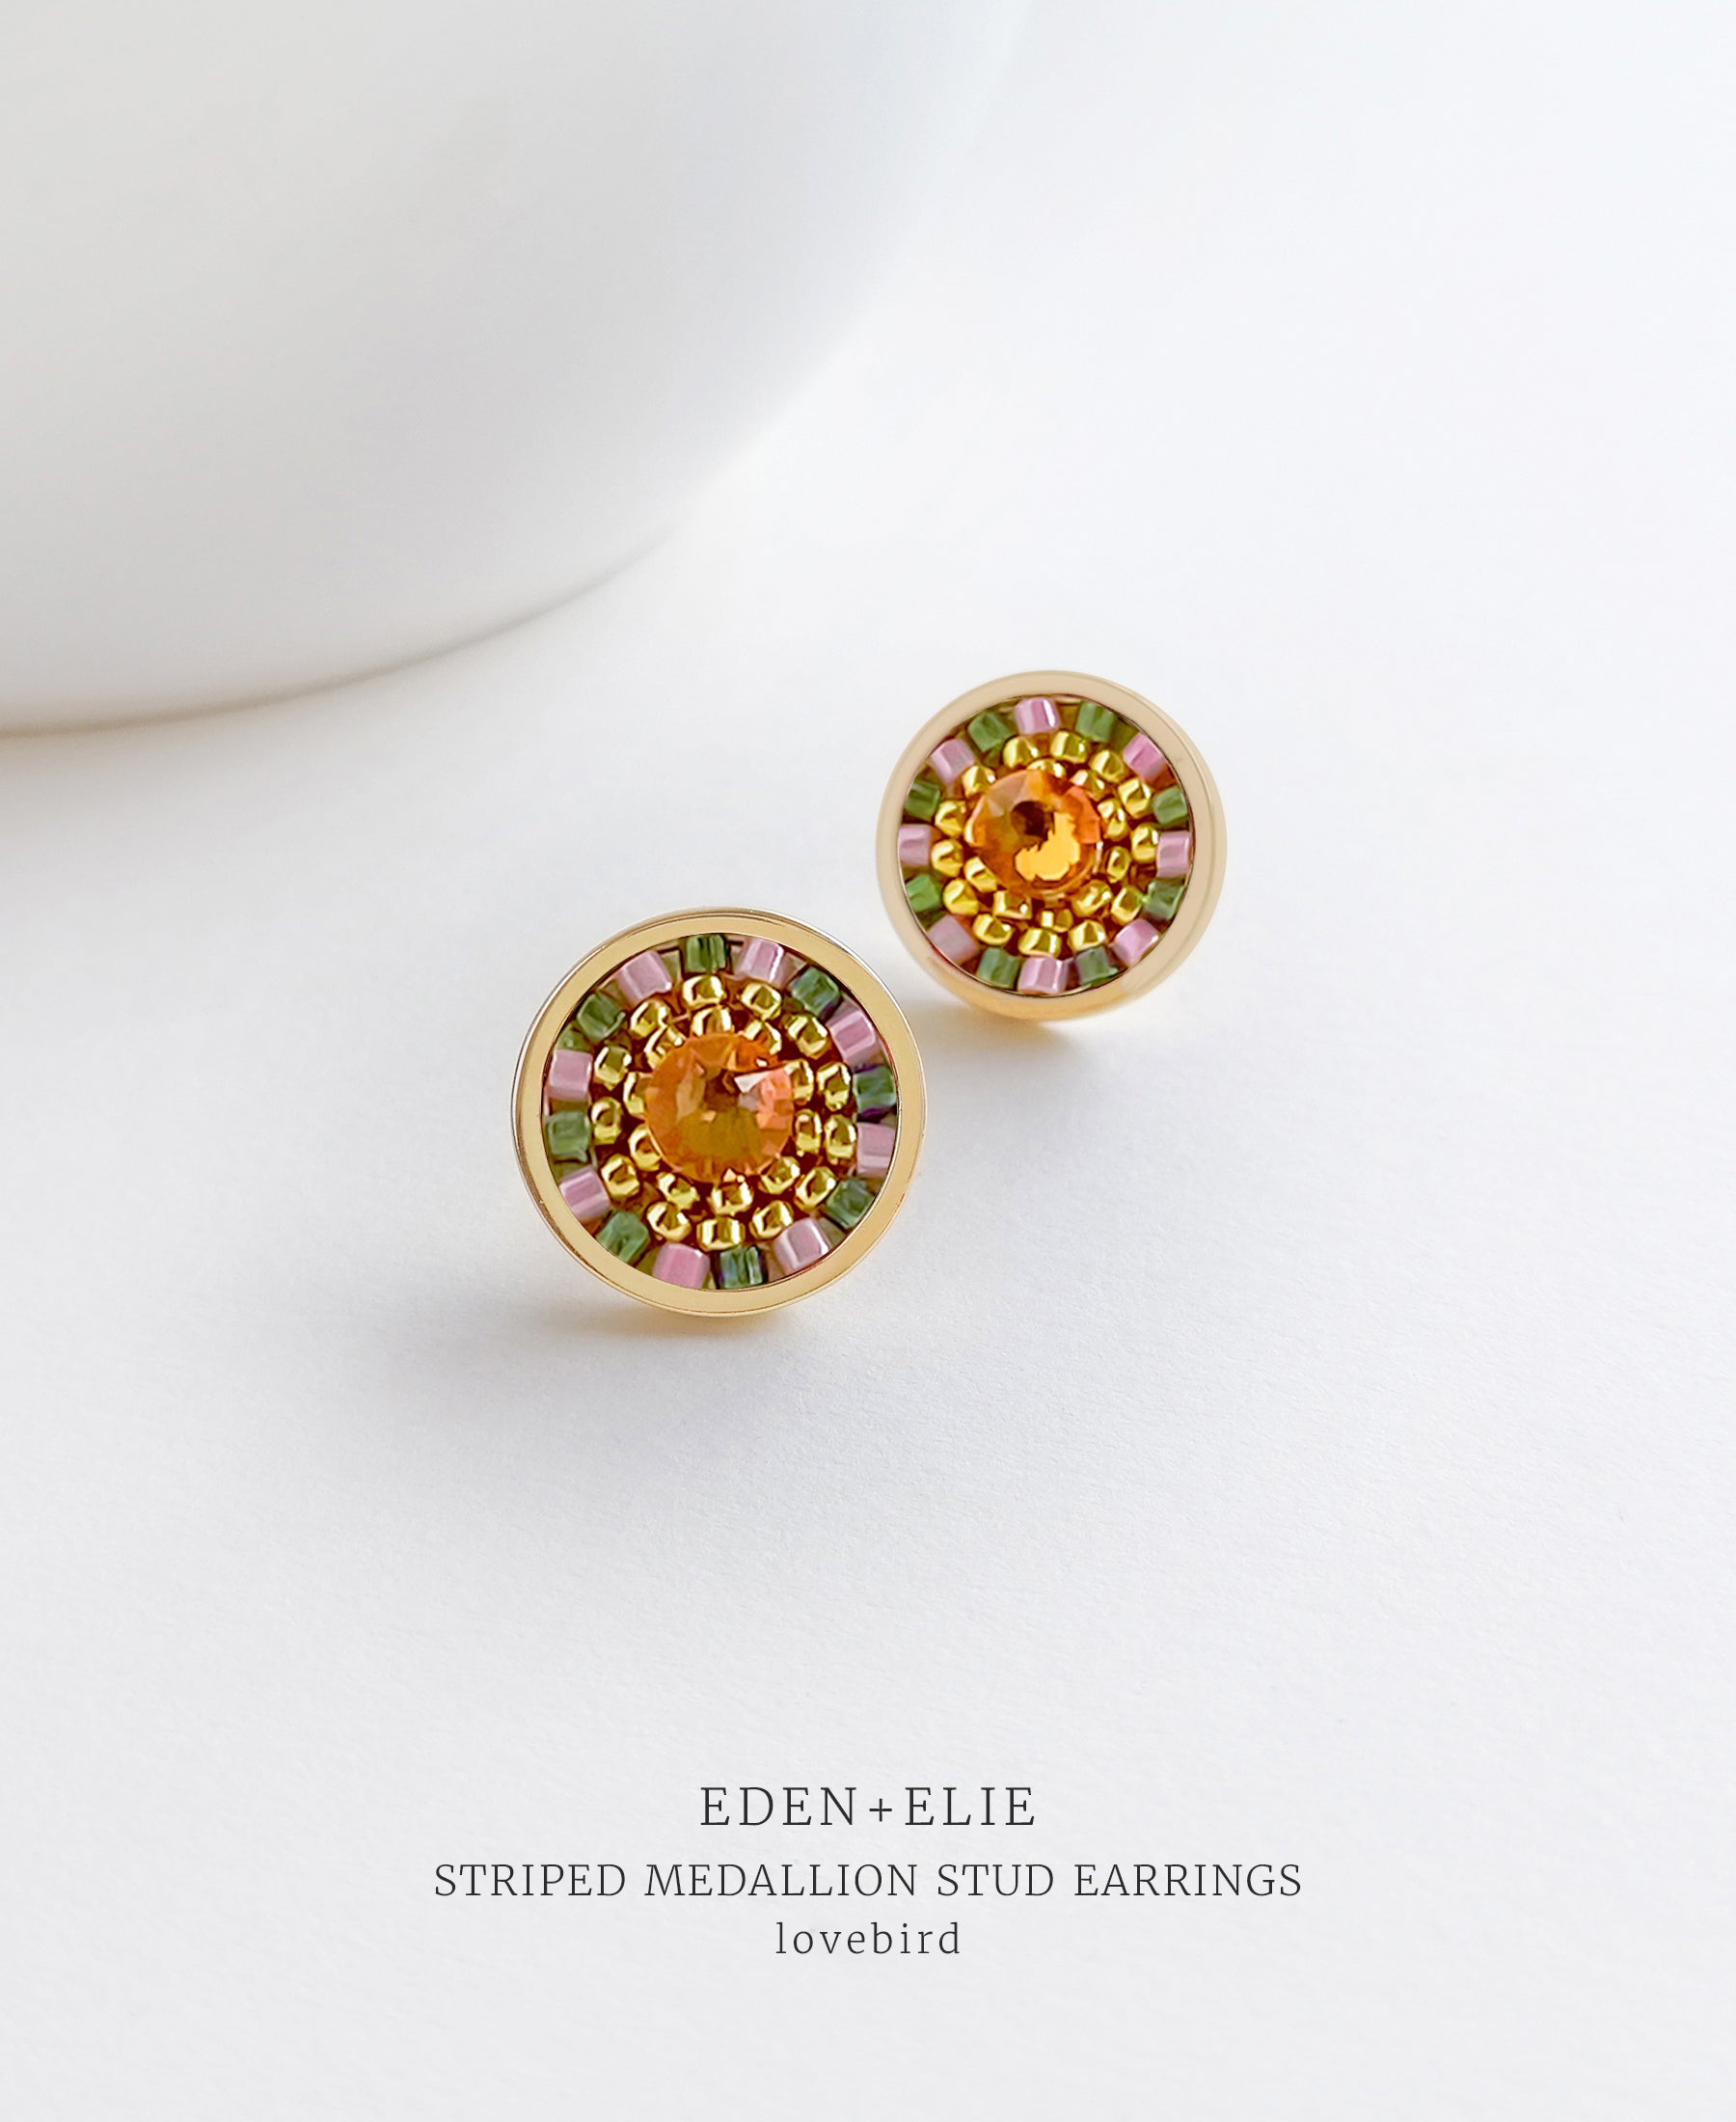 EDEN + ELIE Striped Medallion stud earrings - Lovebird